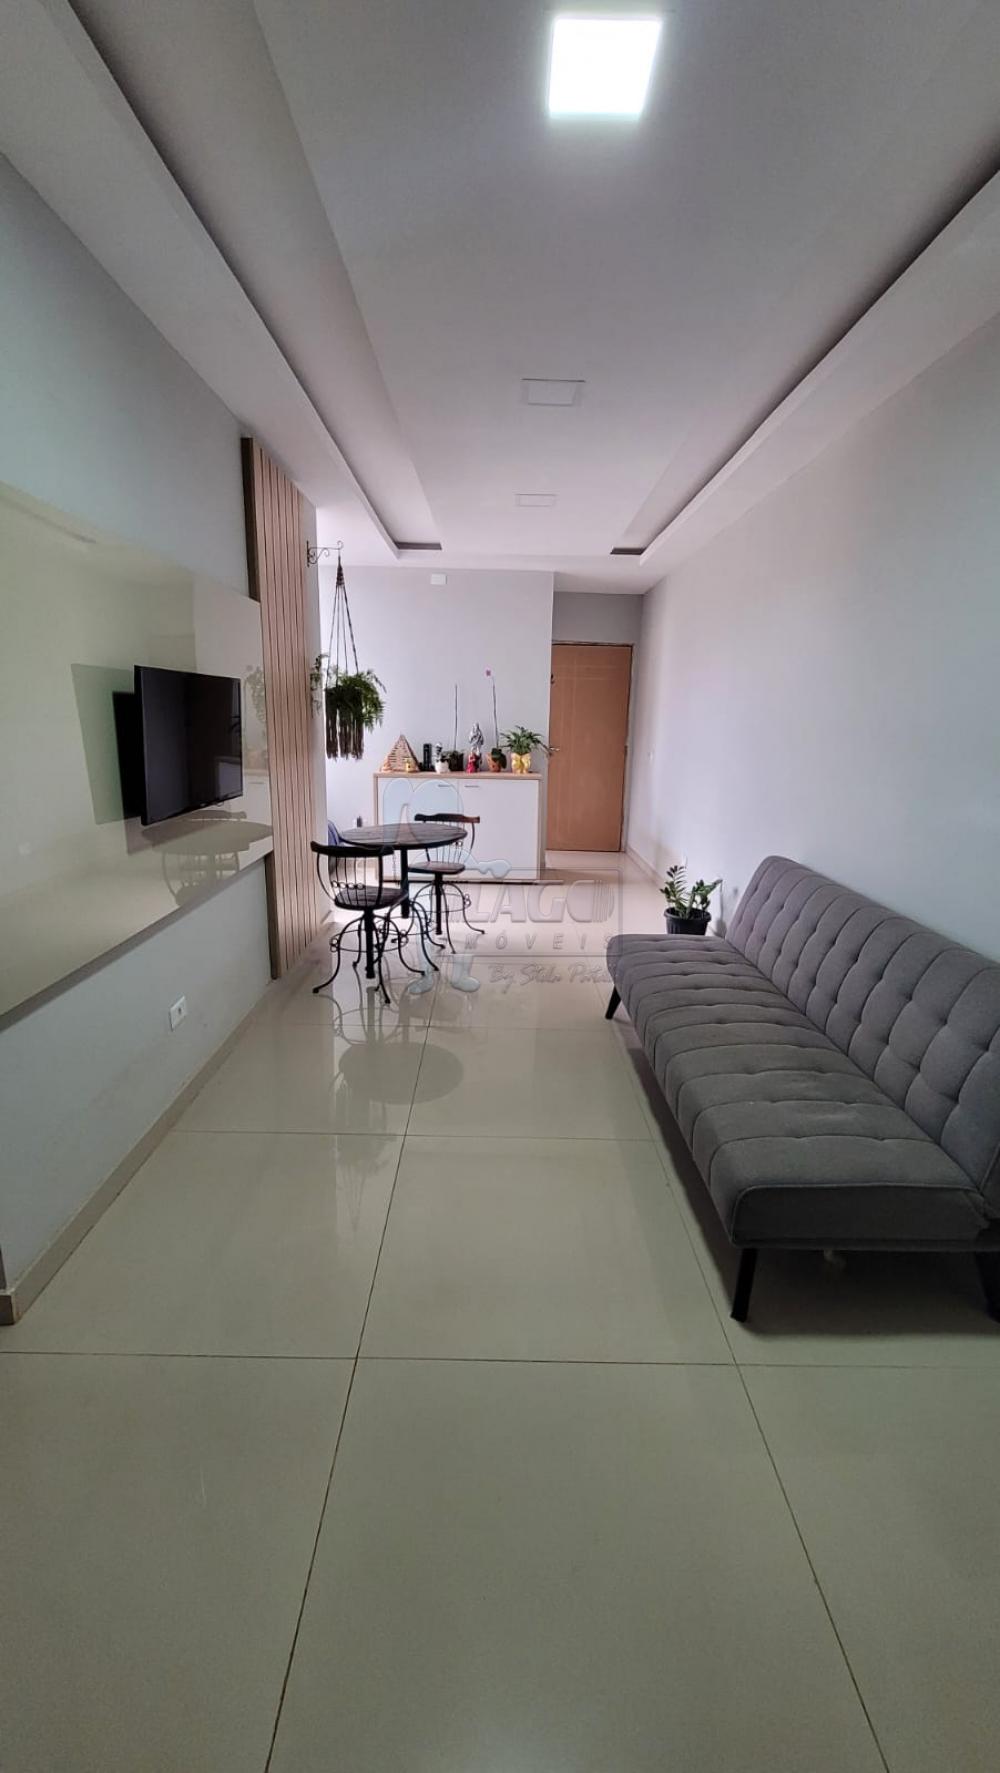 Comprar Apartamento / Padrão em Ribeirão Preto R$ 330.000,00 - Foto 4